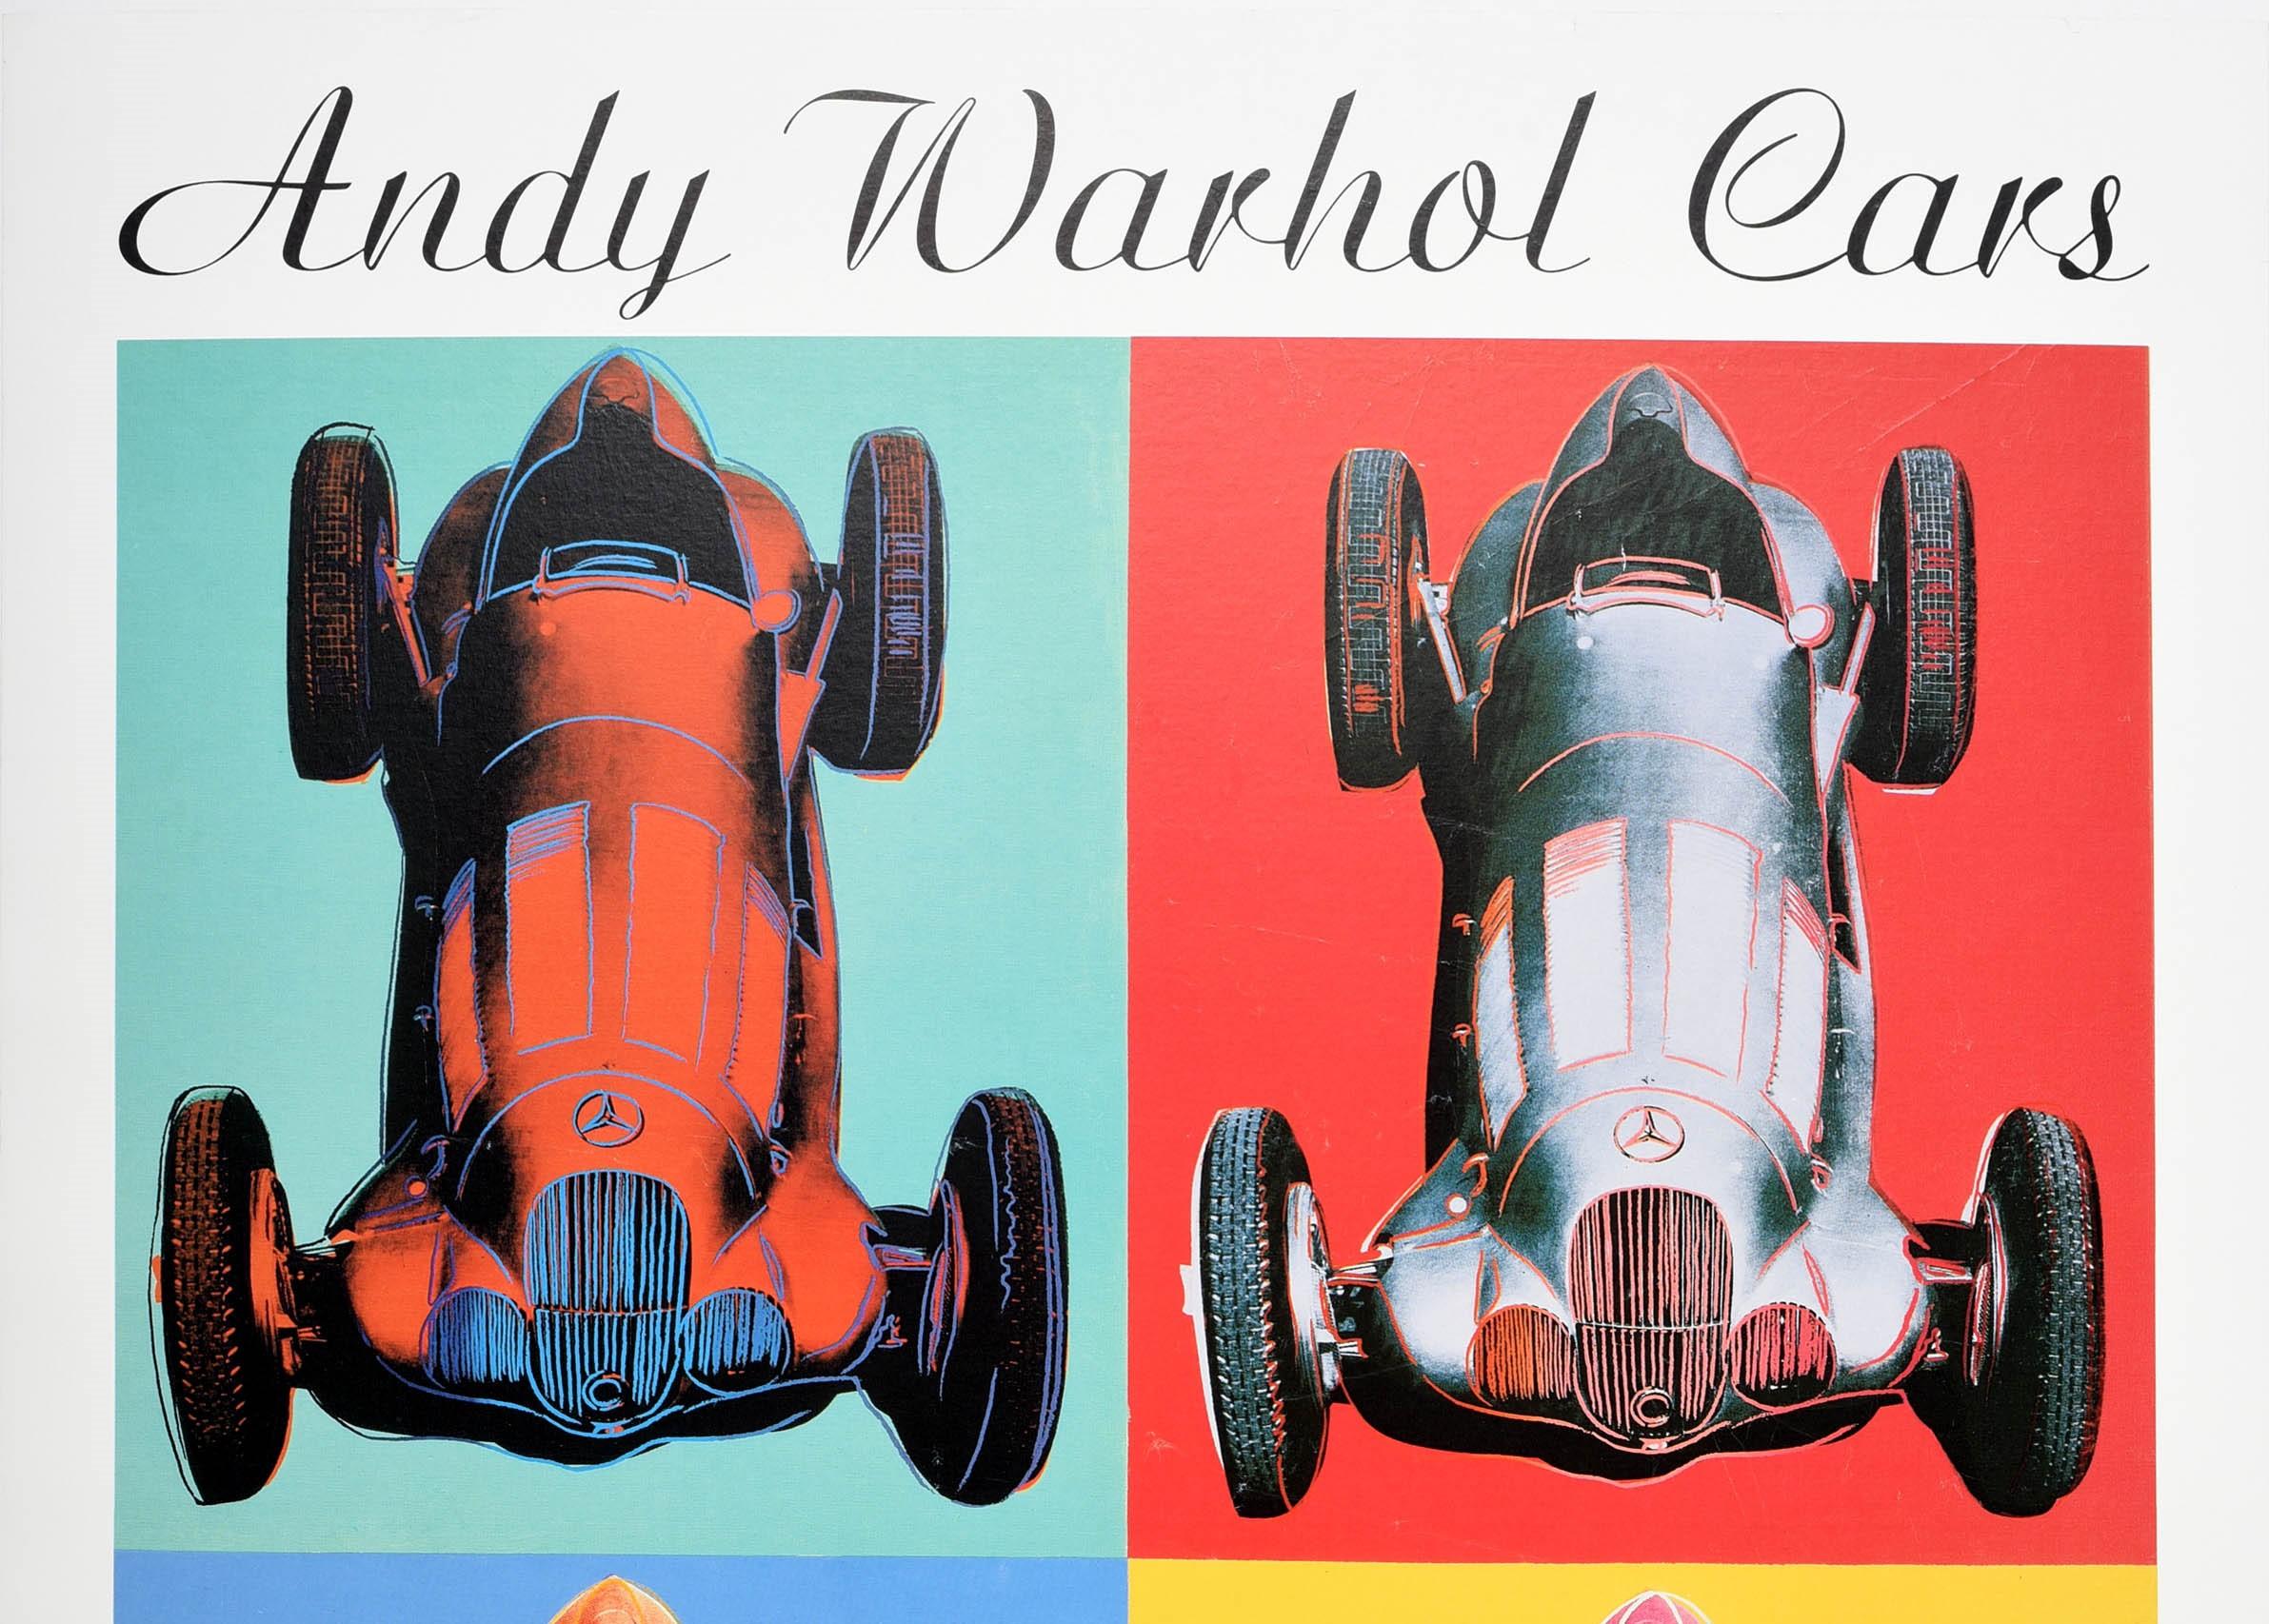 Affiche publicitaire originale et vintage pour une exposition de voitures Andy Warhol au Kunstmuseum de Berne du 2 mars au 29 avril 1990. Image colorée représentant quatre voitures de course Mercedes Benz sur des fonds vert, rouge, bleu et jaune,